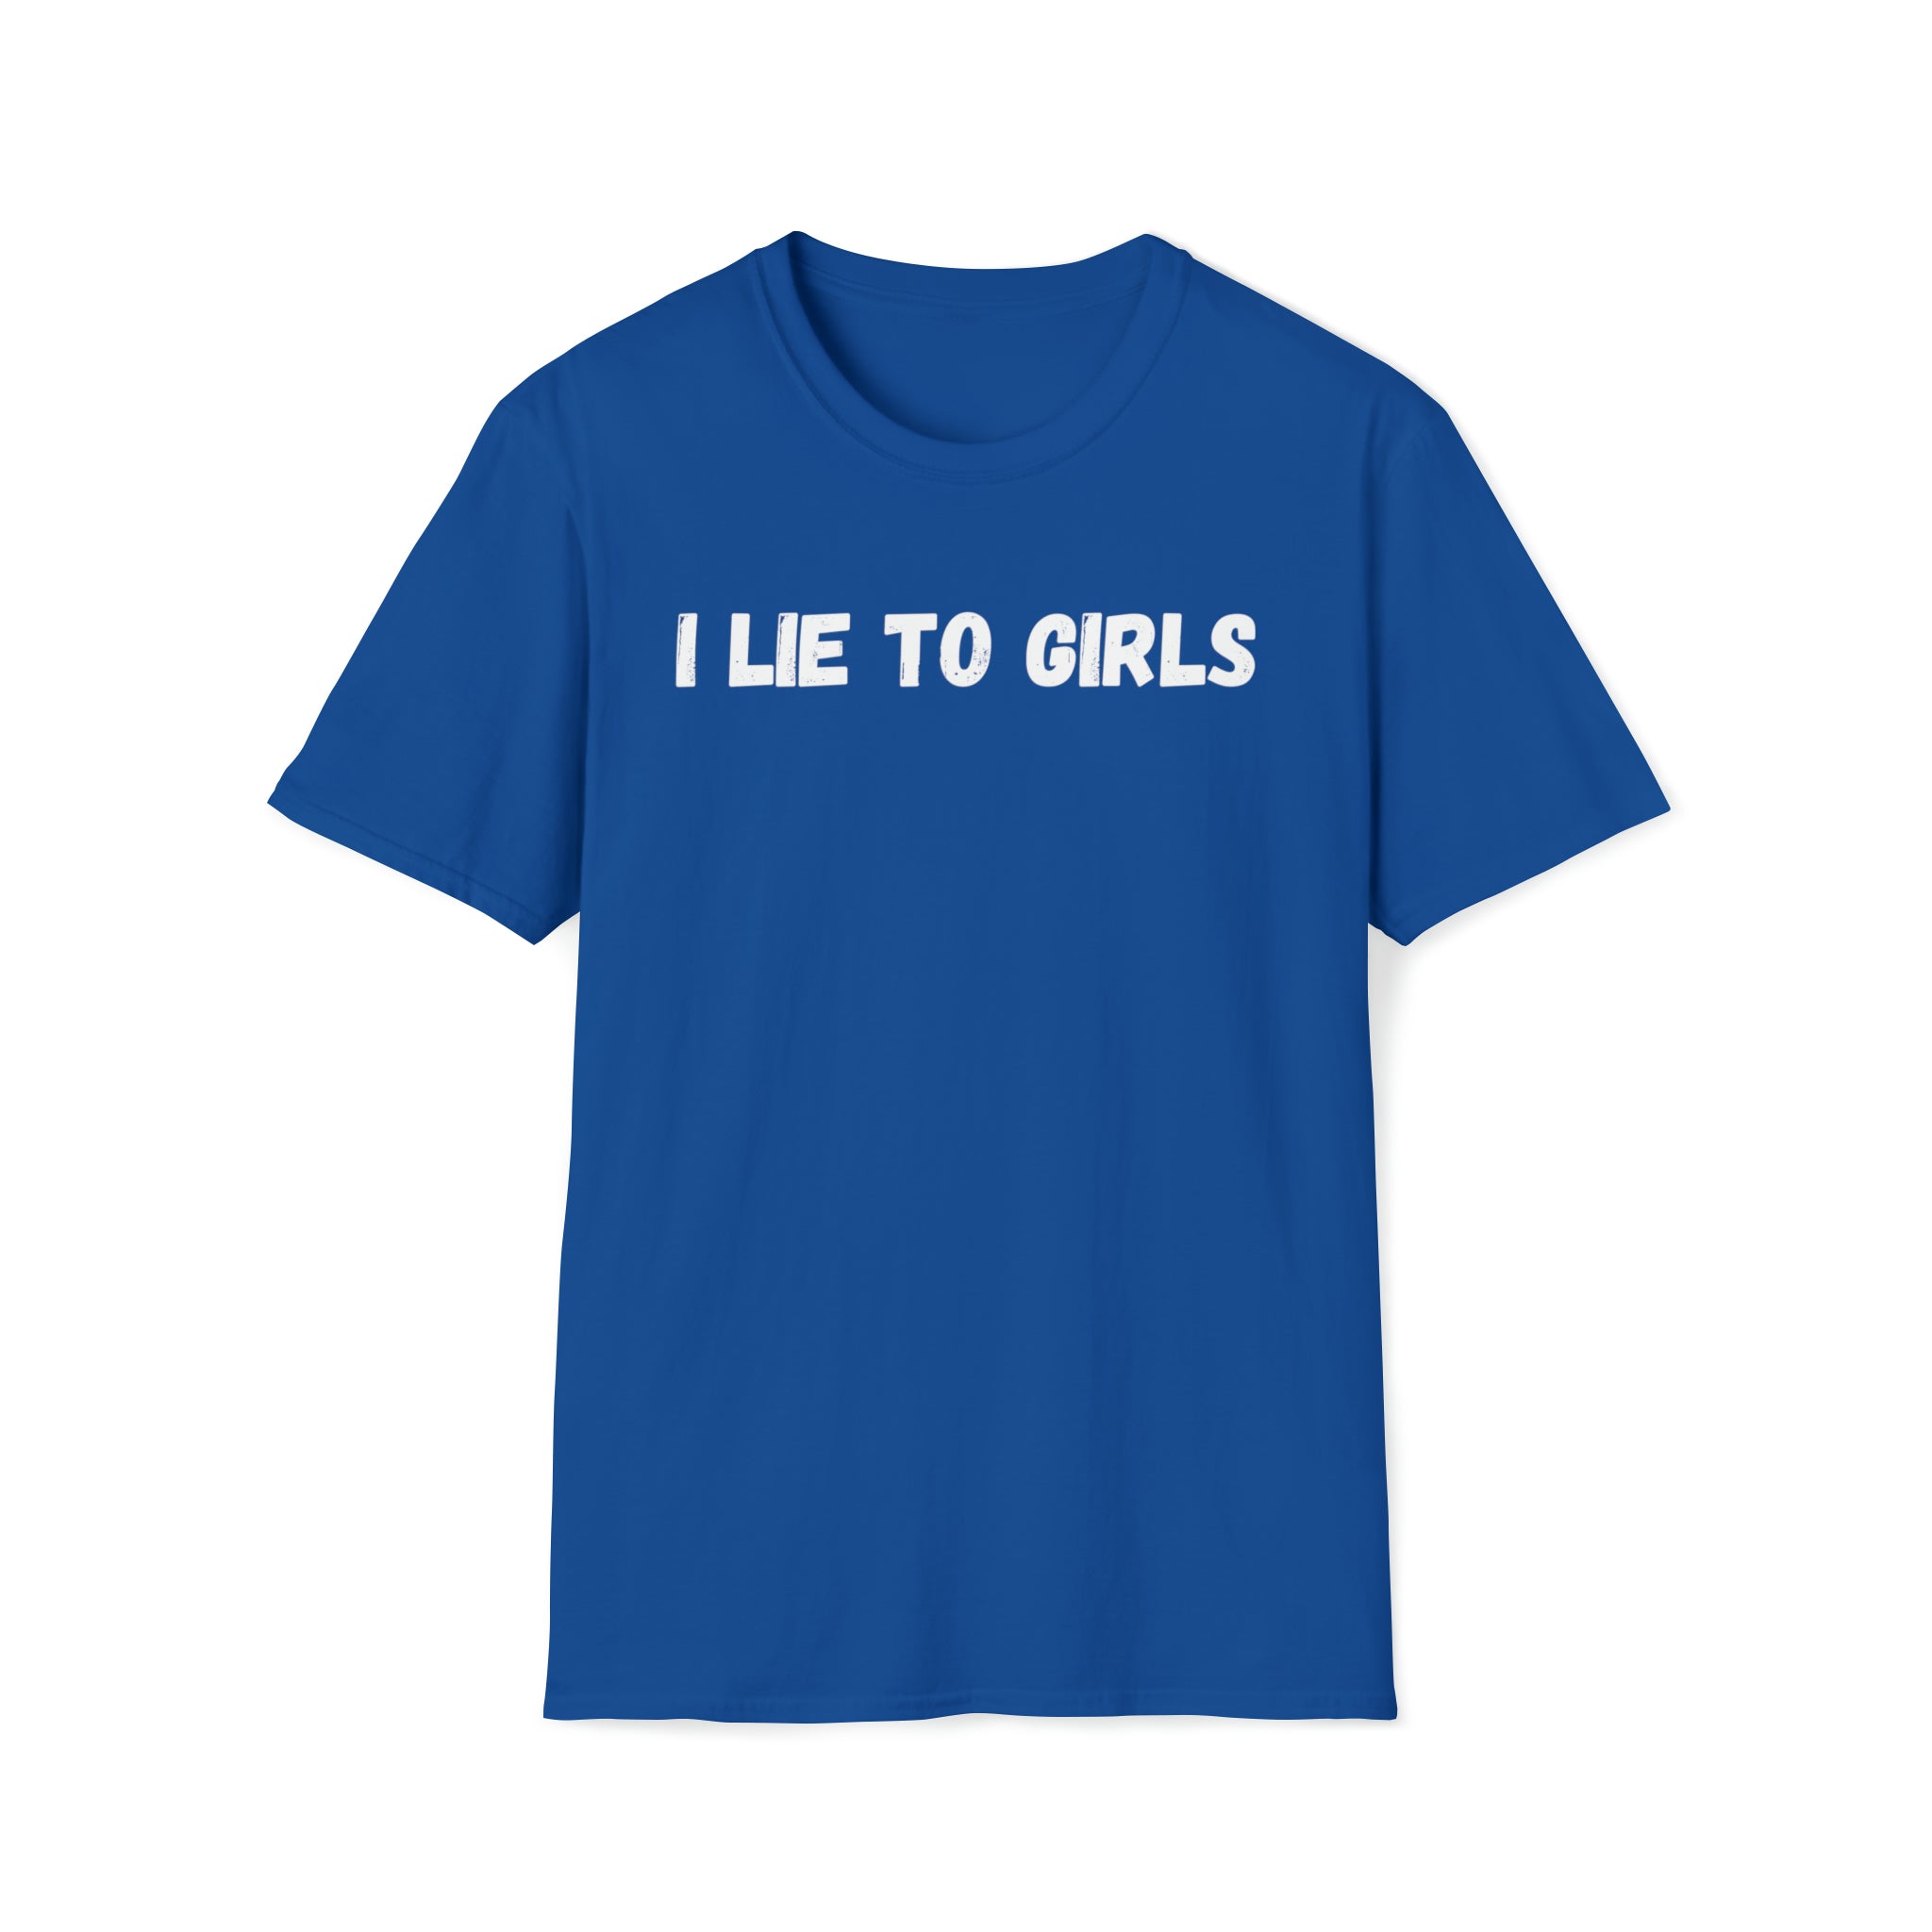 I LIE TO GIRLS T-Shirt